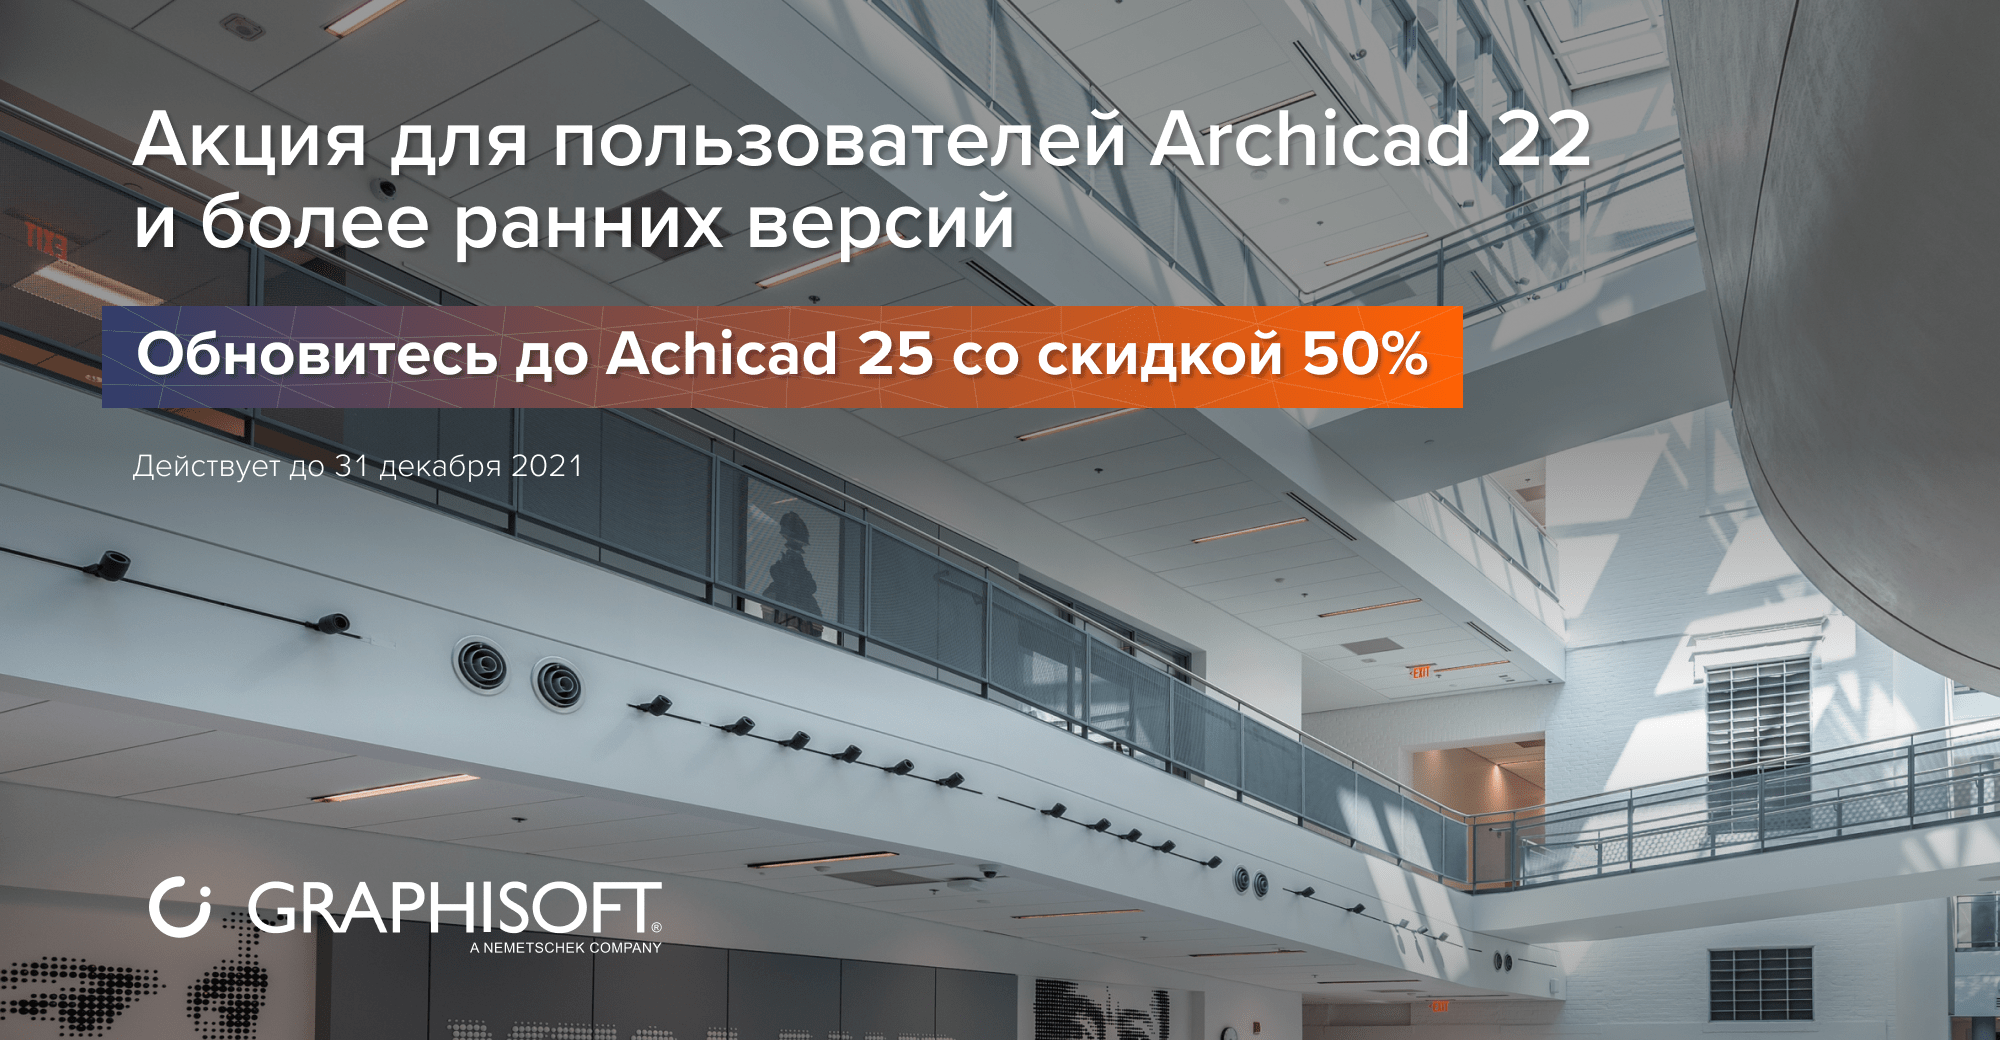 Акция для пользователей Archicad 22 и более ранних версий: обновитесь до Archicad 25 со скидкой 50%!